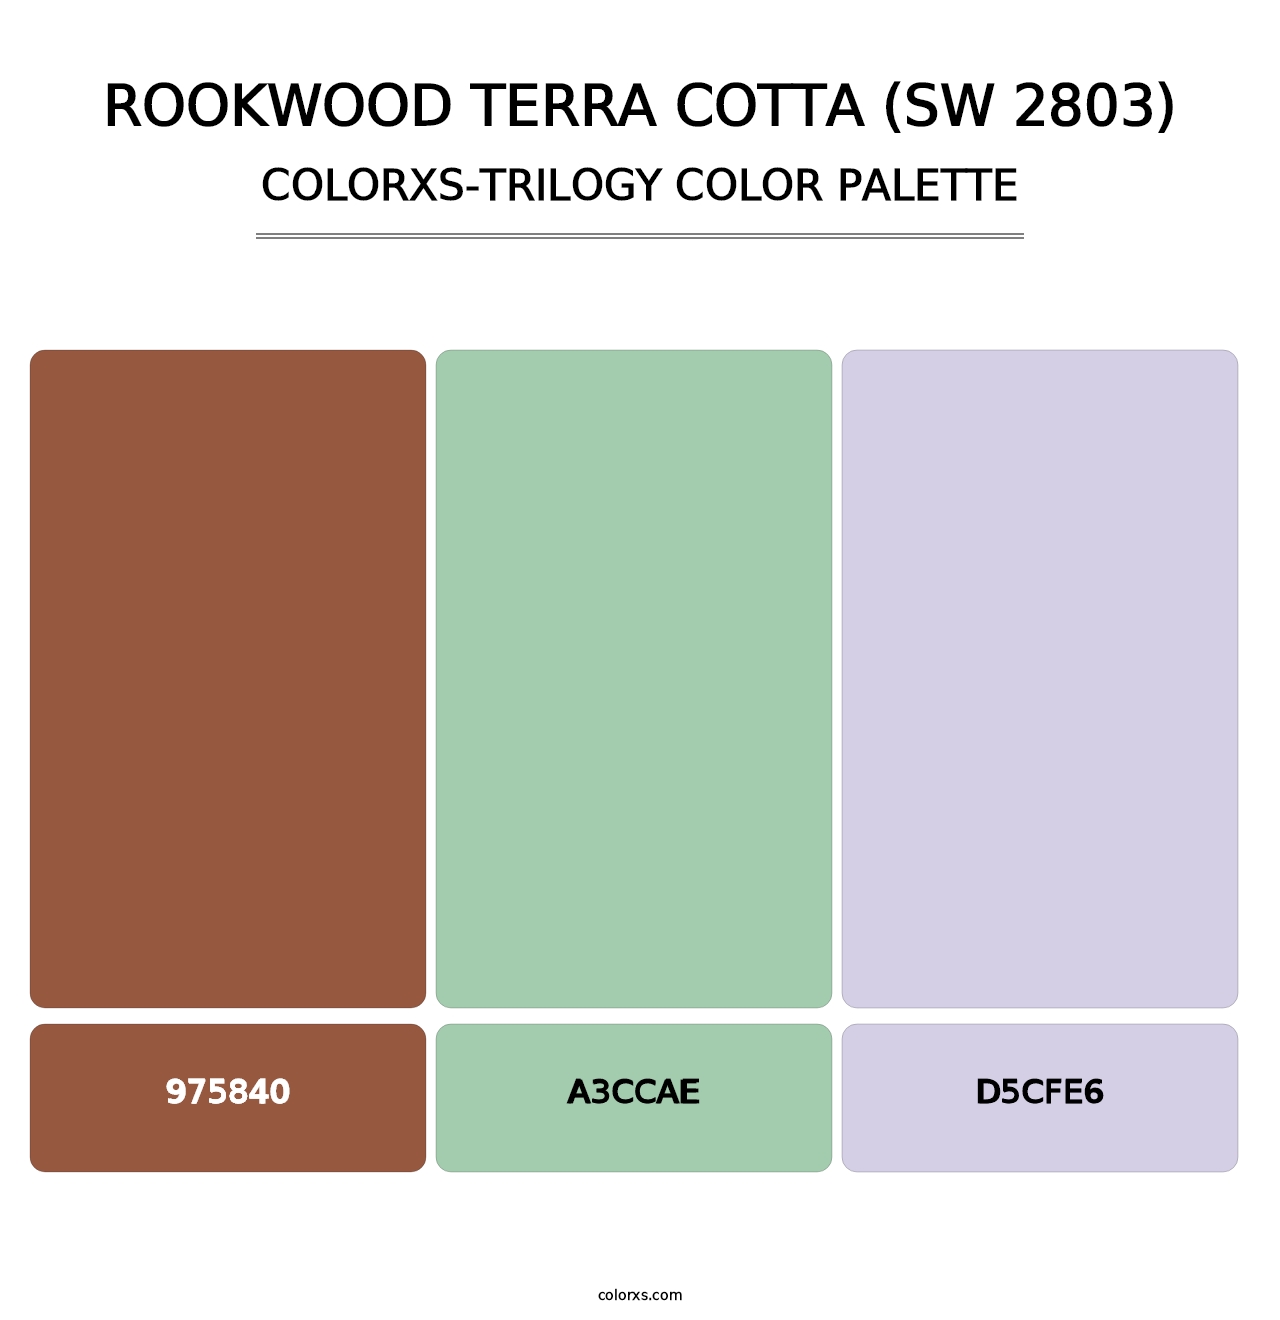 Rookwood Terra Cotta (SW 2803) - Colorxs Trilogy Palette